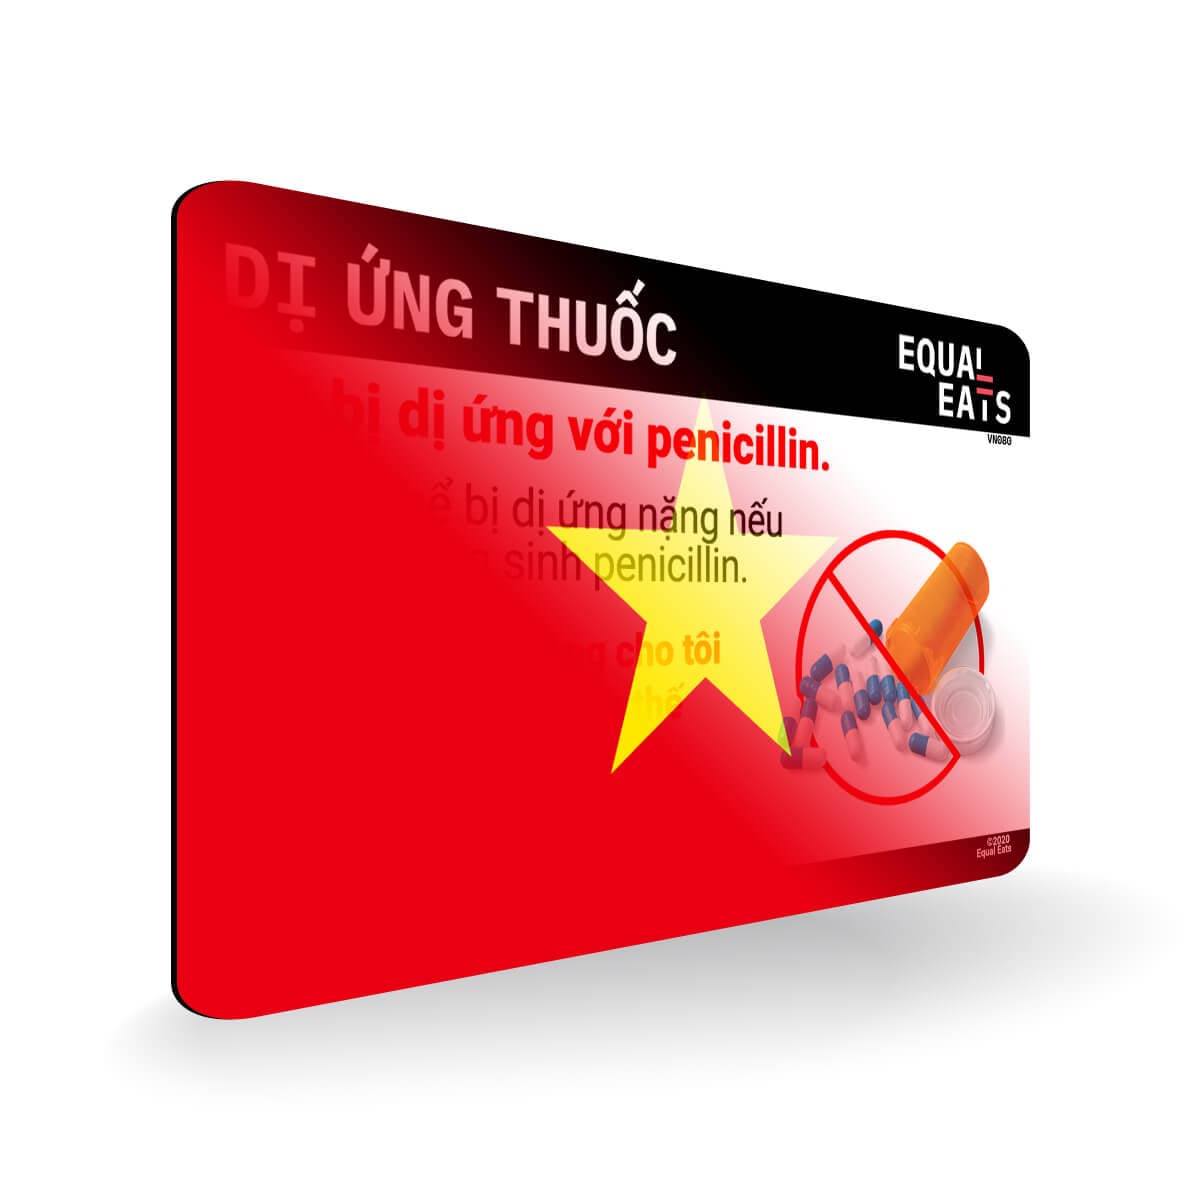 Penicillin Allergy in Vietnamese. Penicillin medical ID Card for Vietnam